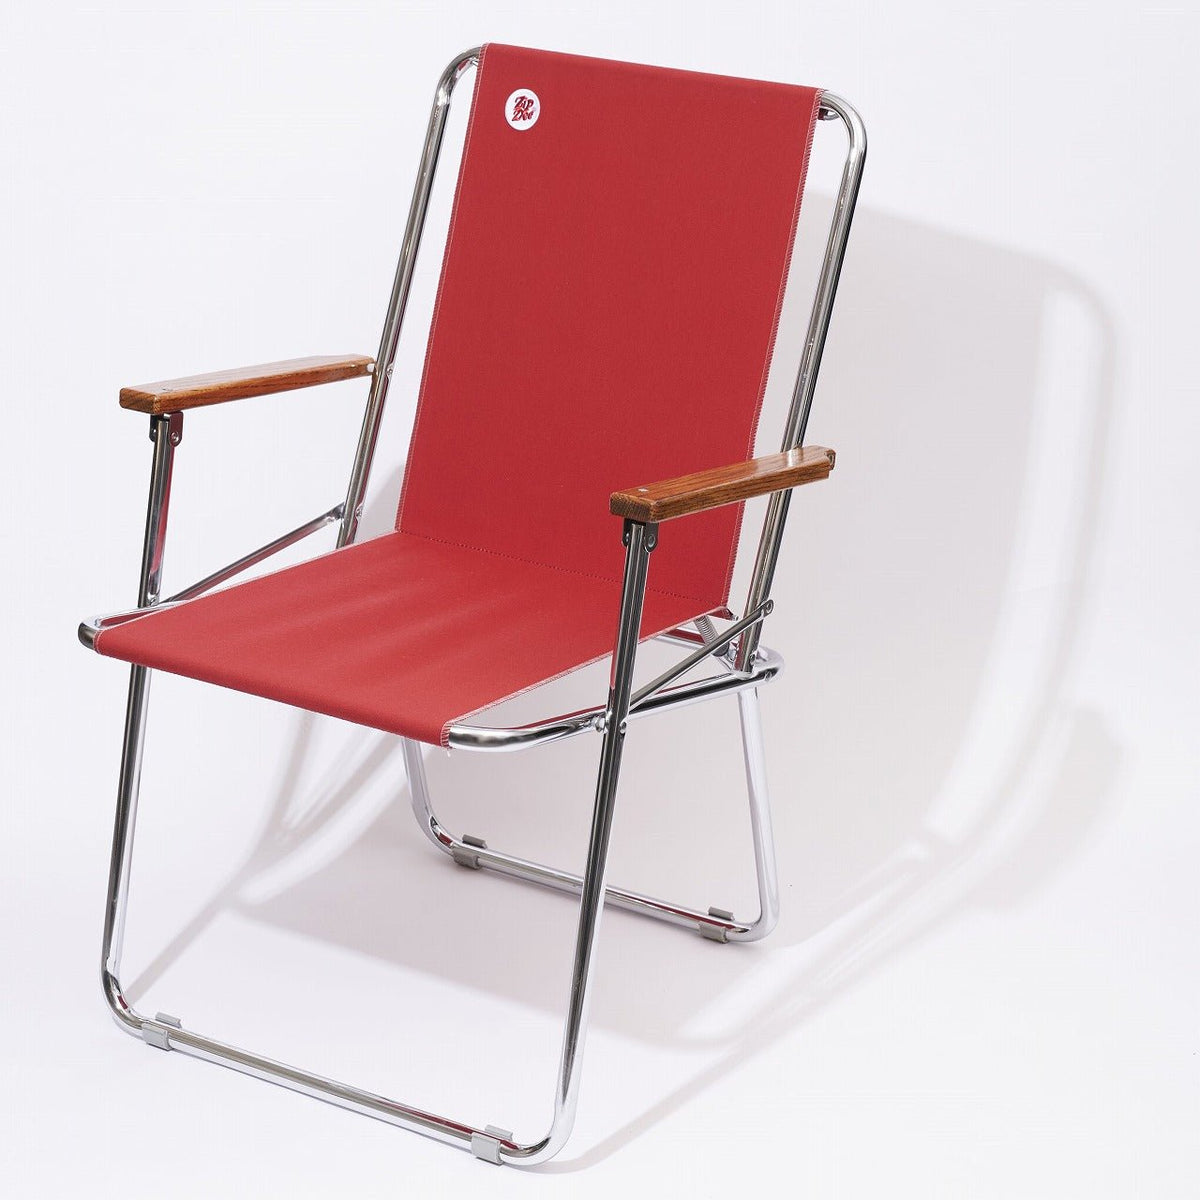 ZipDee CHAIR col. 4603 [Jockey Red] – ZipDee Awning u0026 Chair / Solo Star  Japan Co.